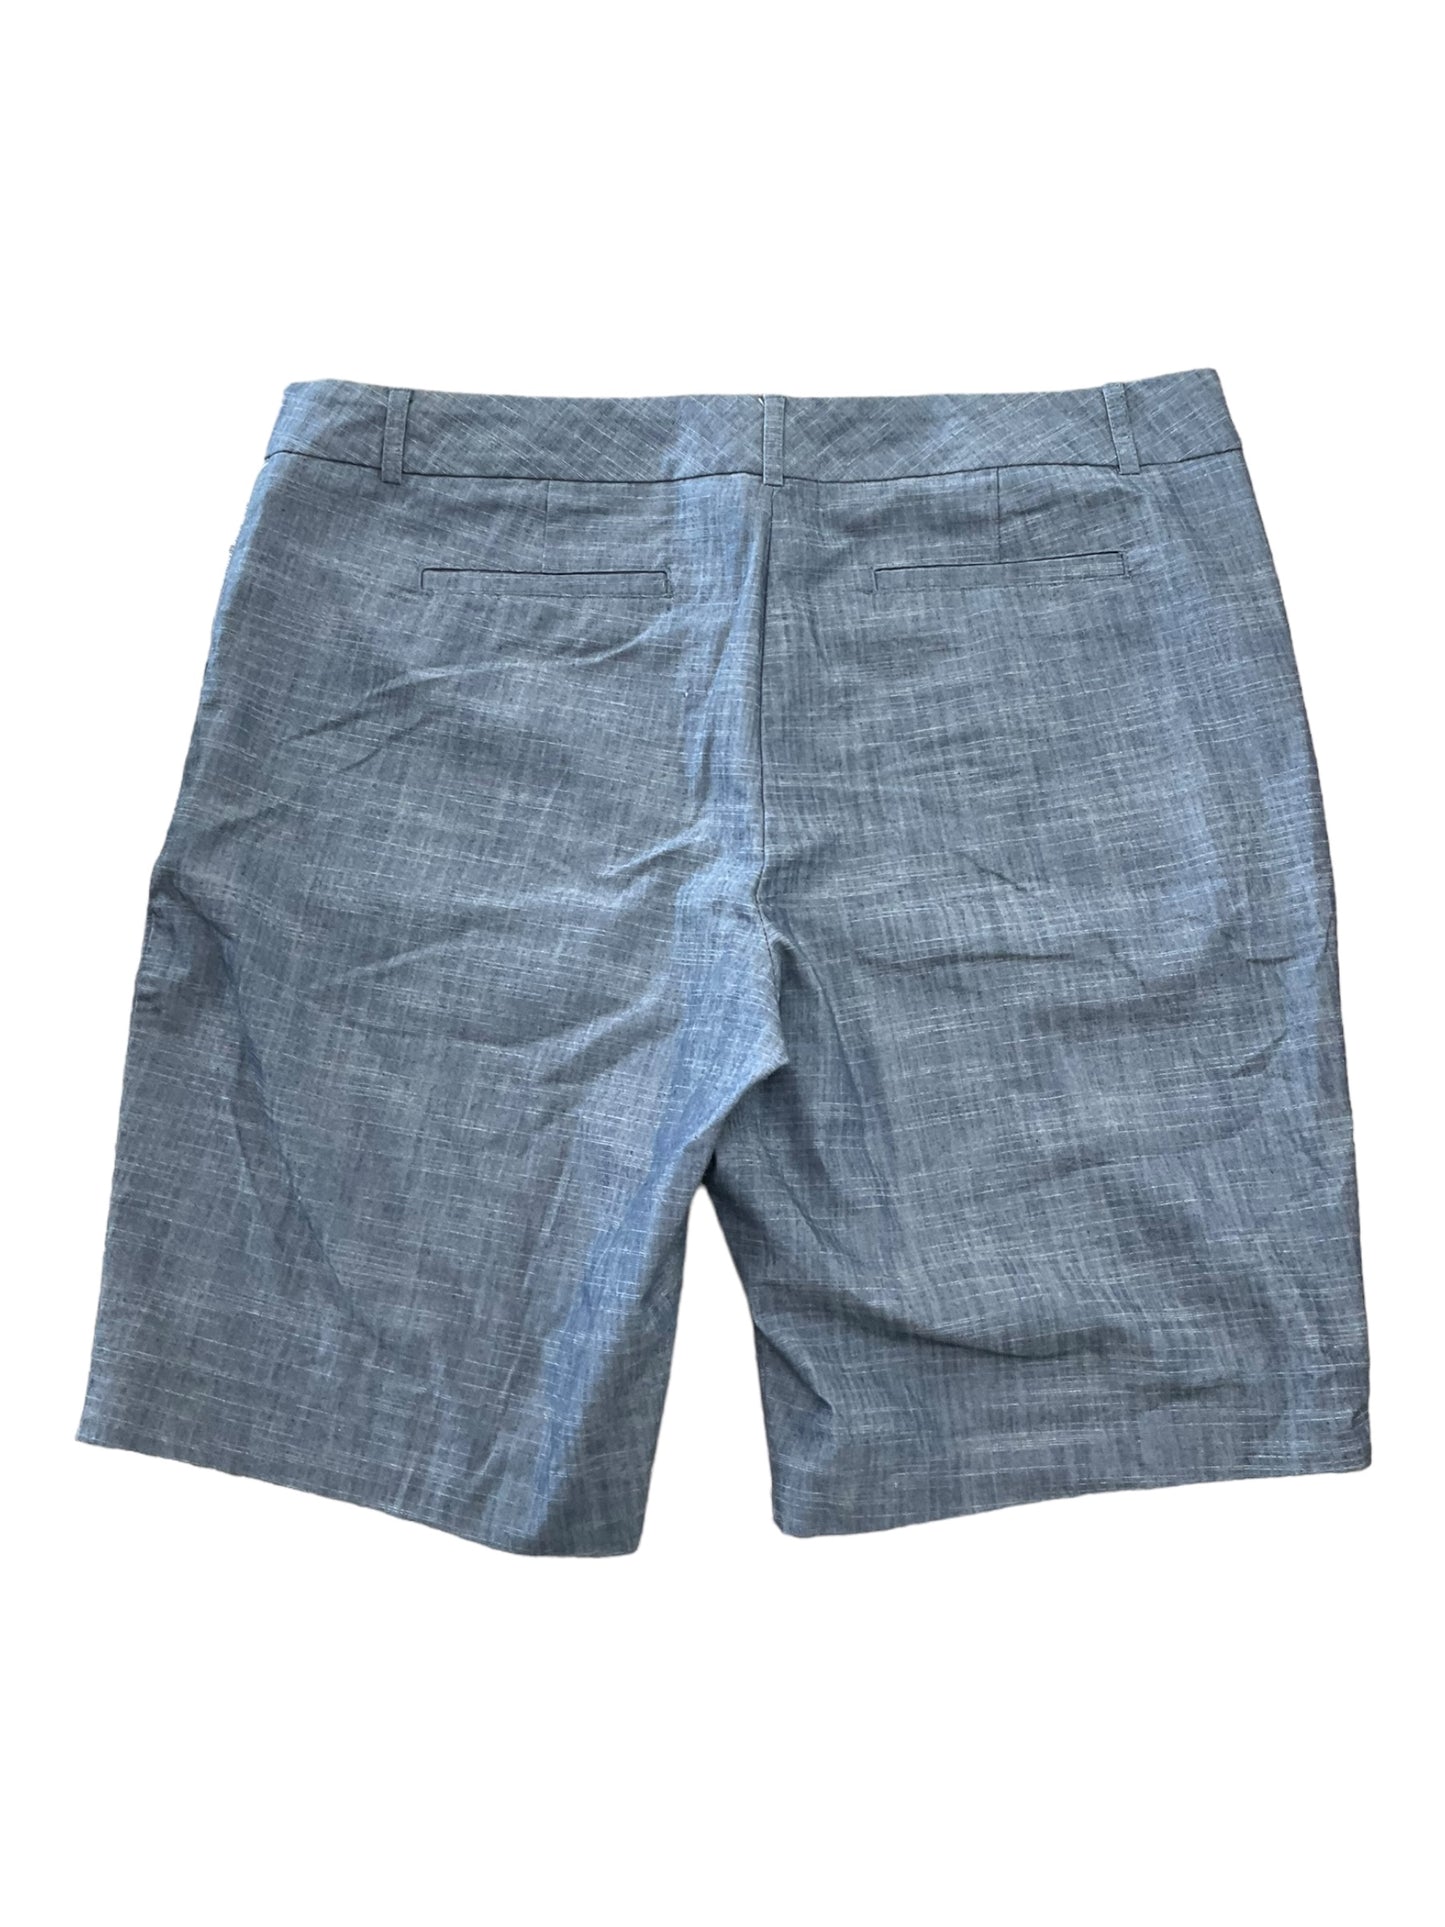 Shorts By Van Heusen  Size: 14